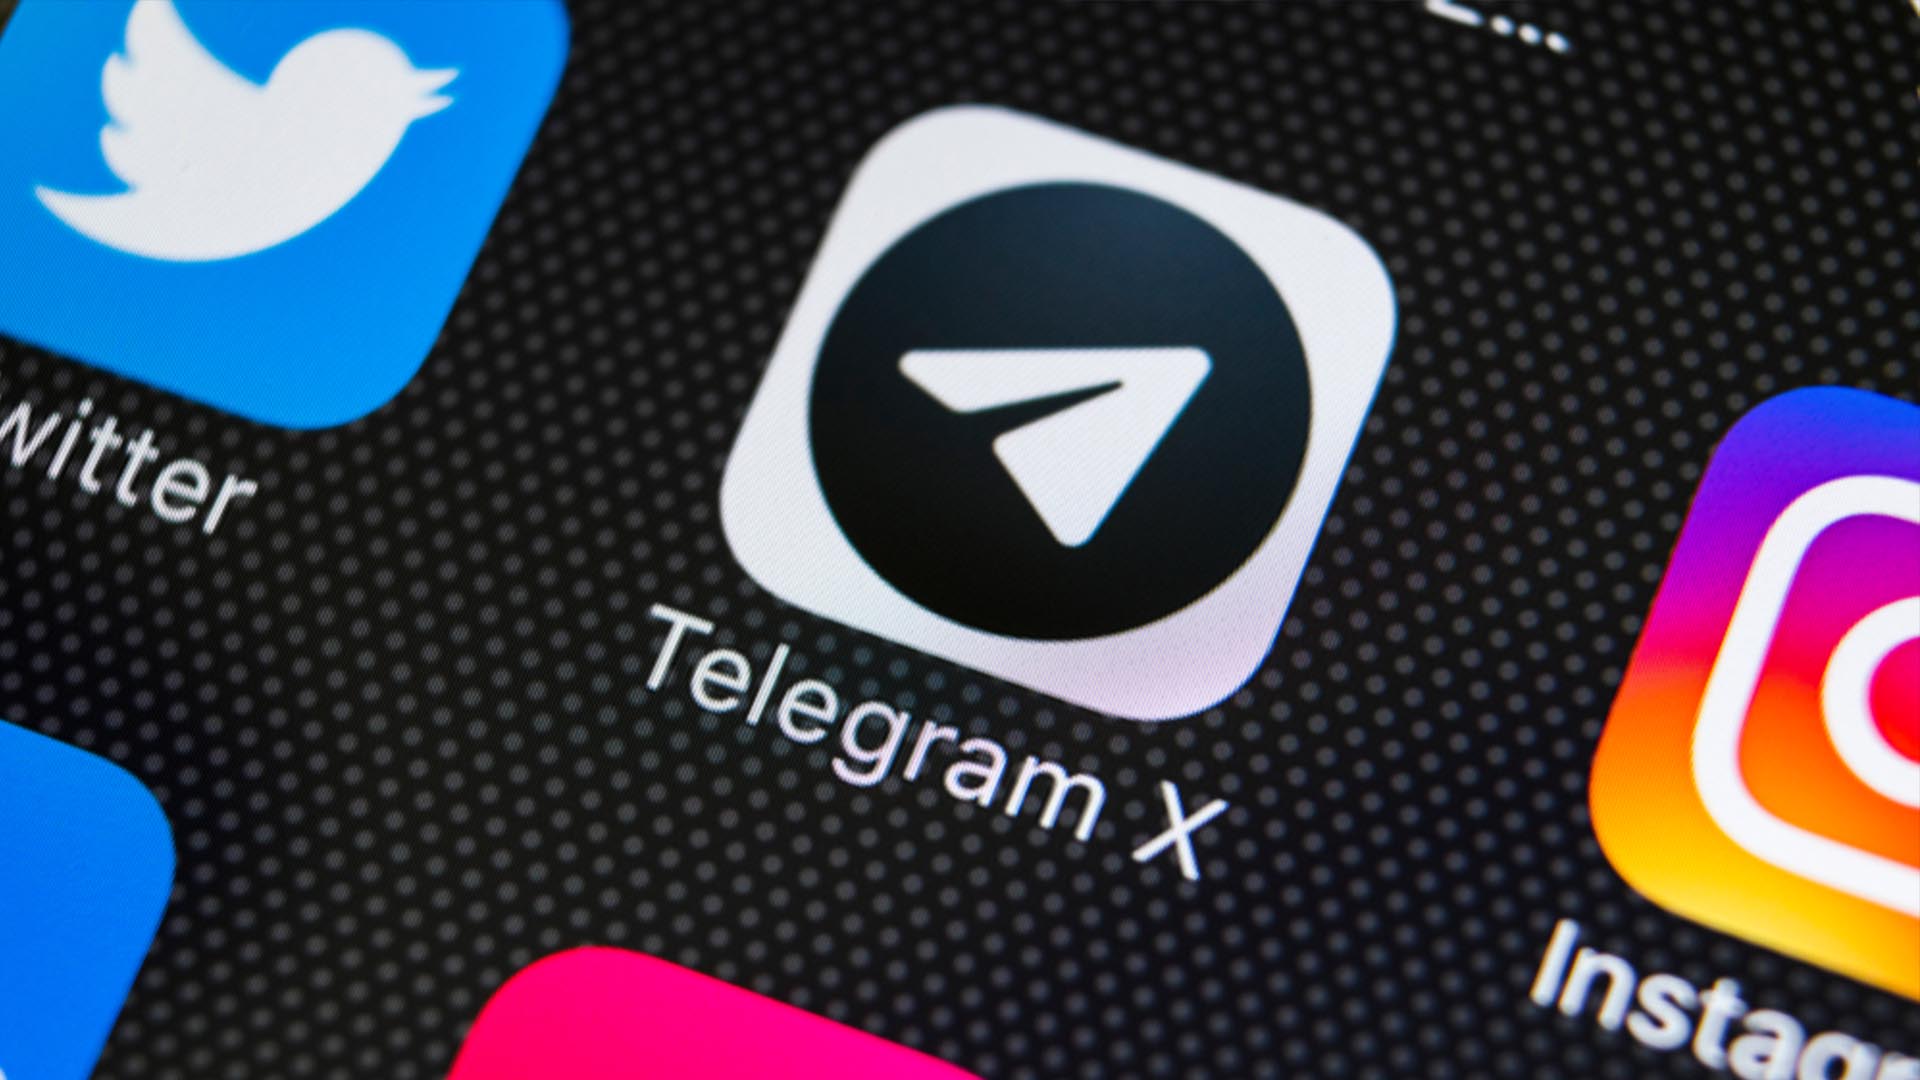 telegram x ios 2020